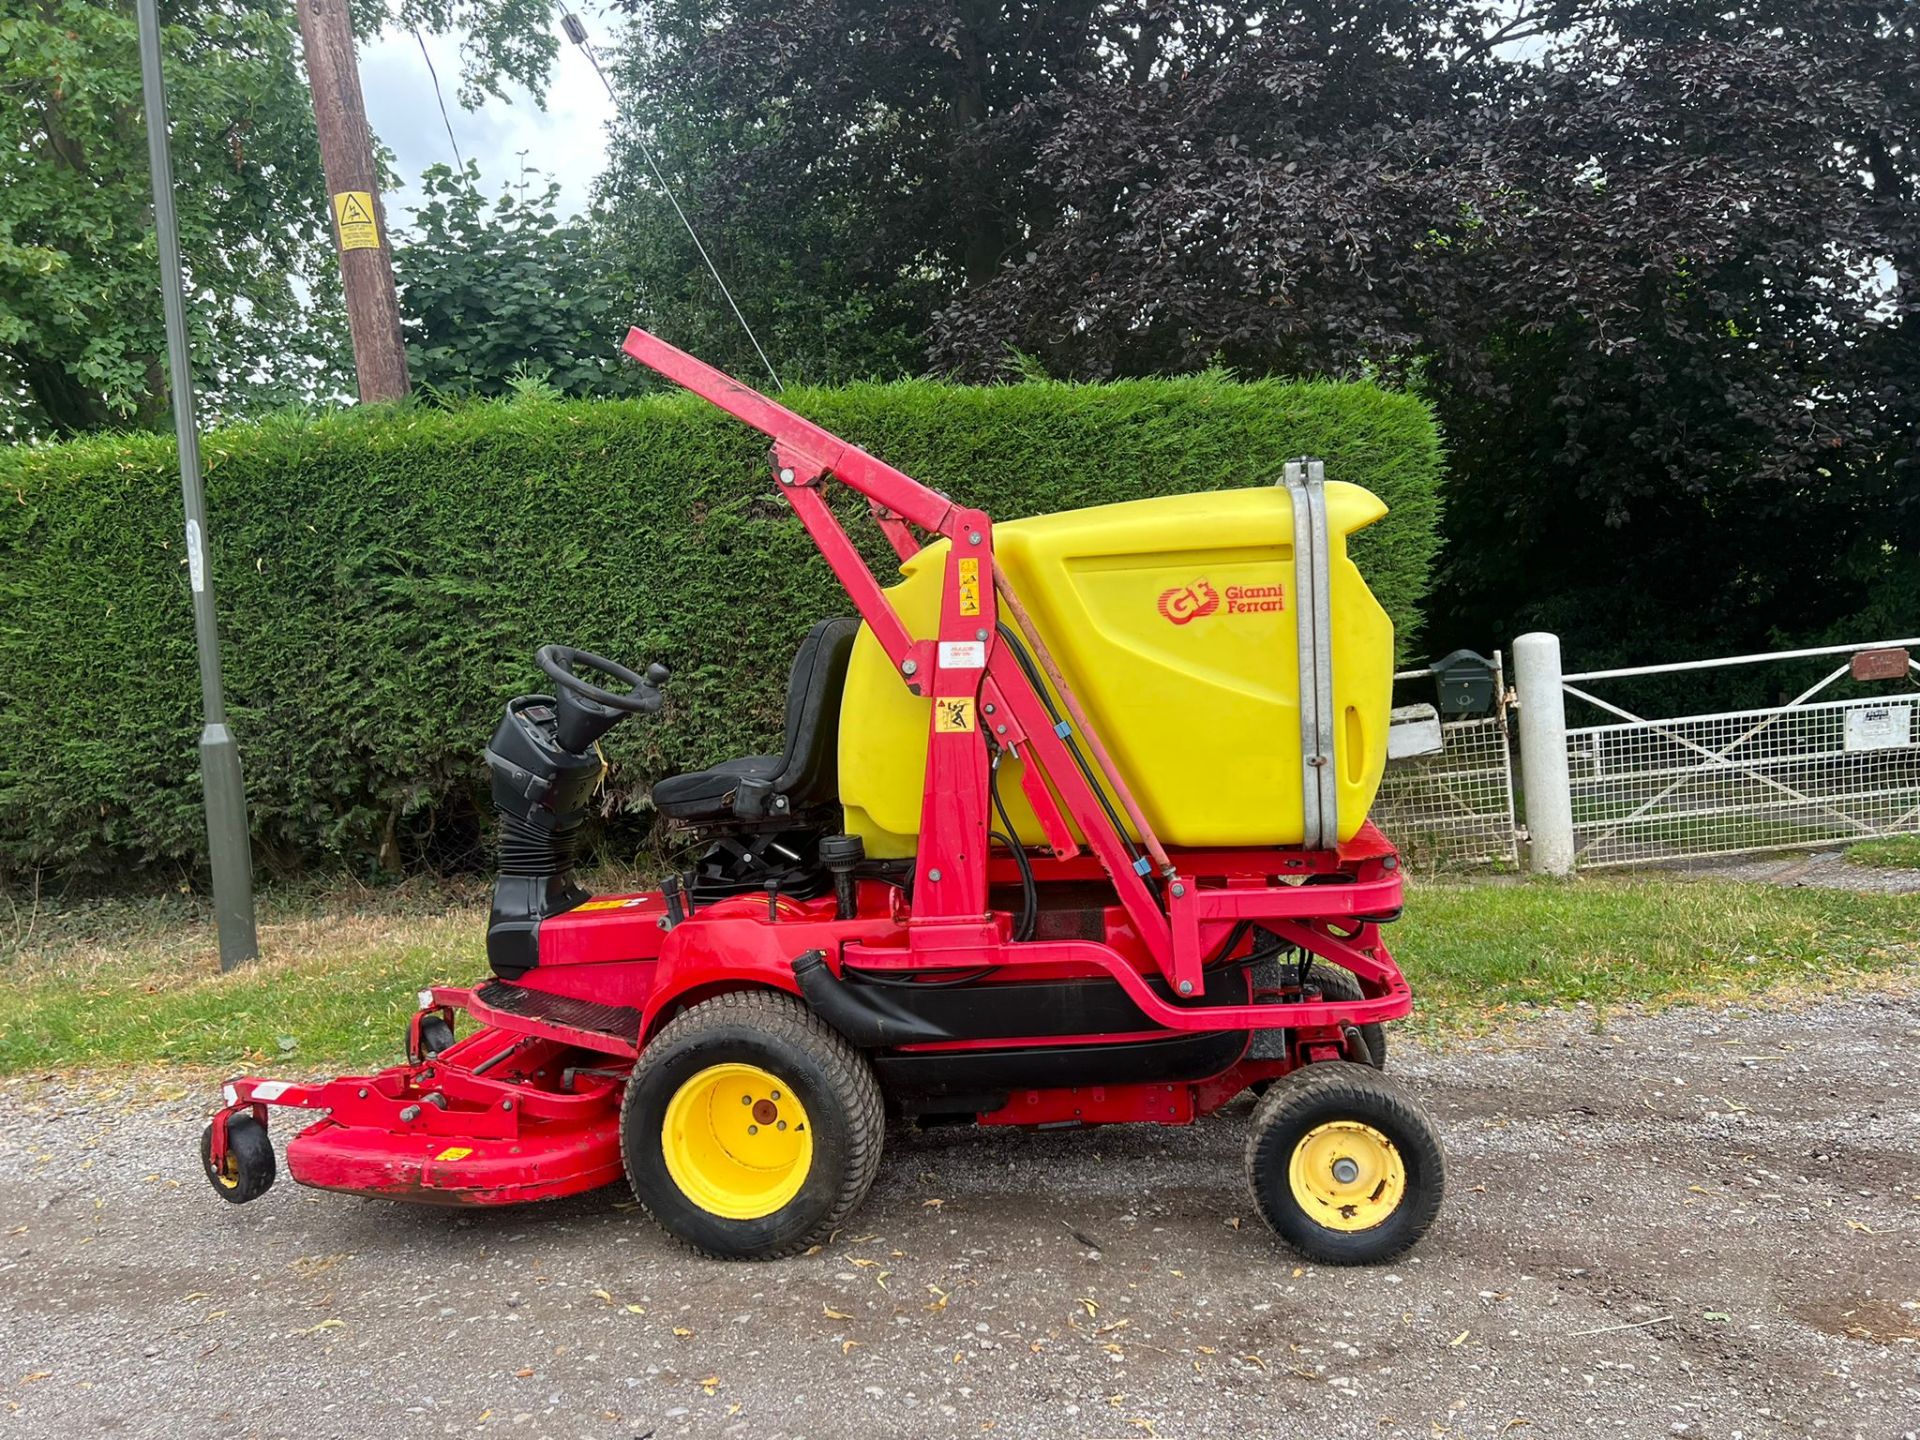 Gianni Ferrari PG280D Ride On Lawn Mower *PLUS VAT* - Image 3 of 11